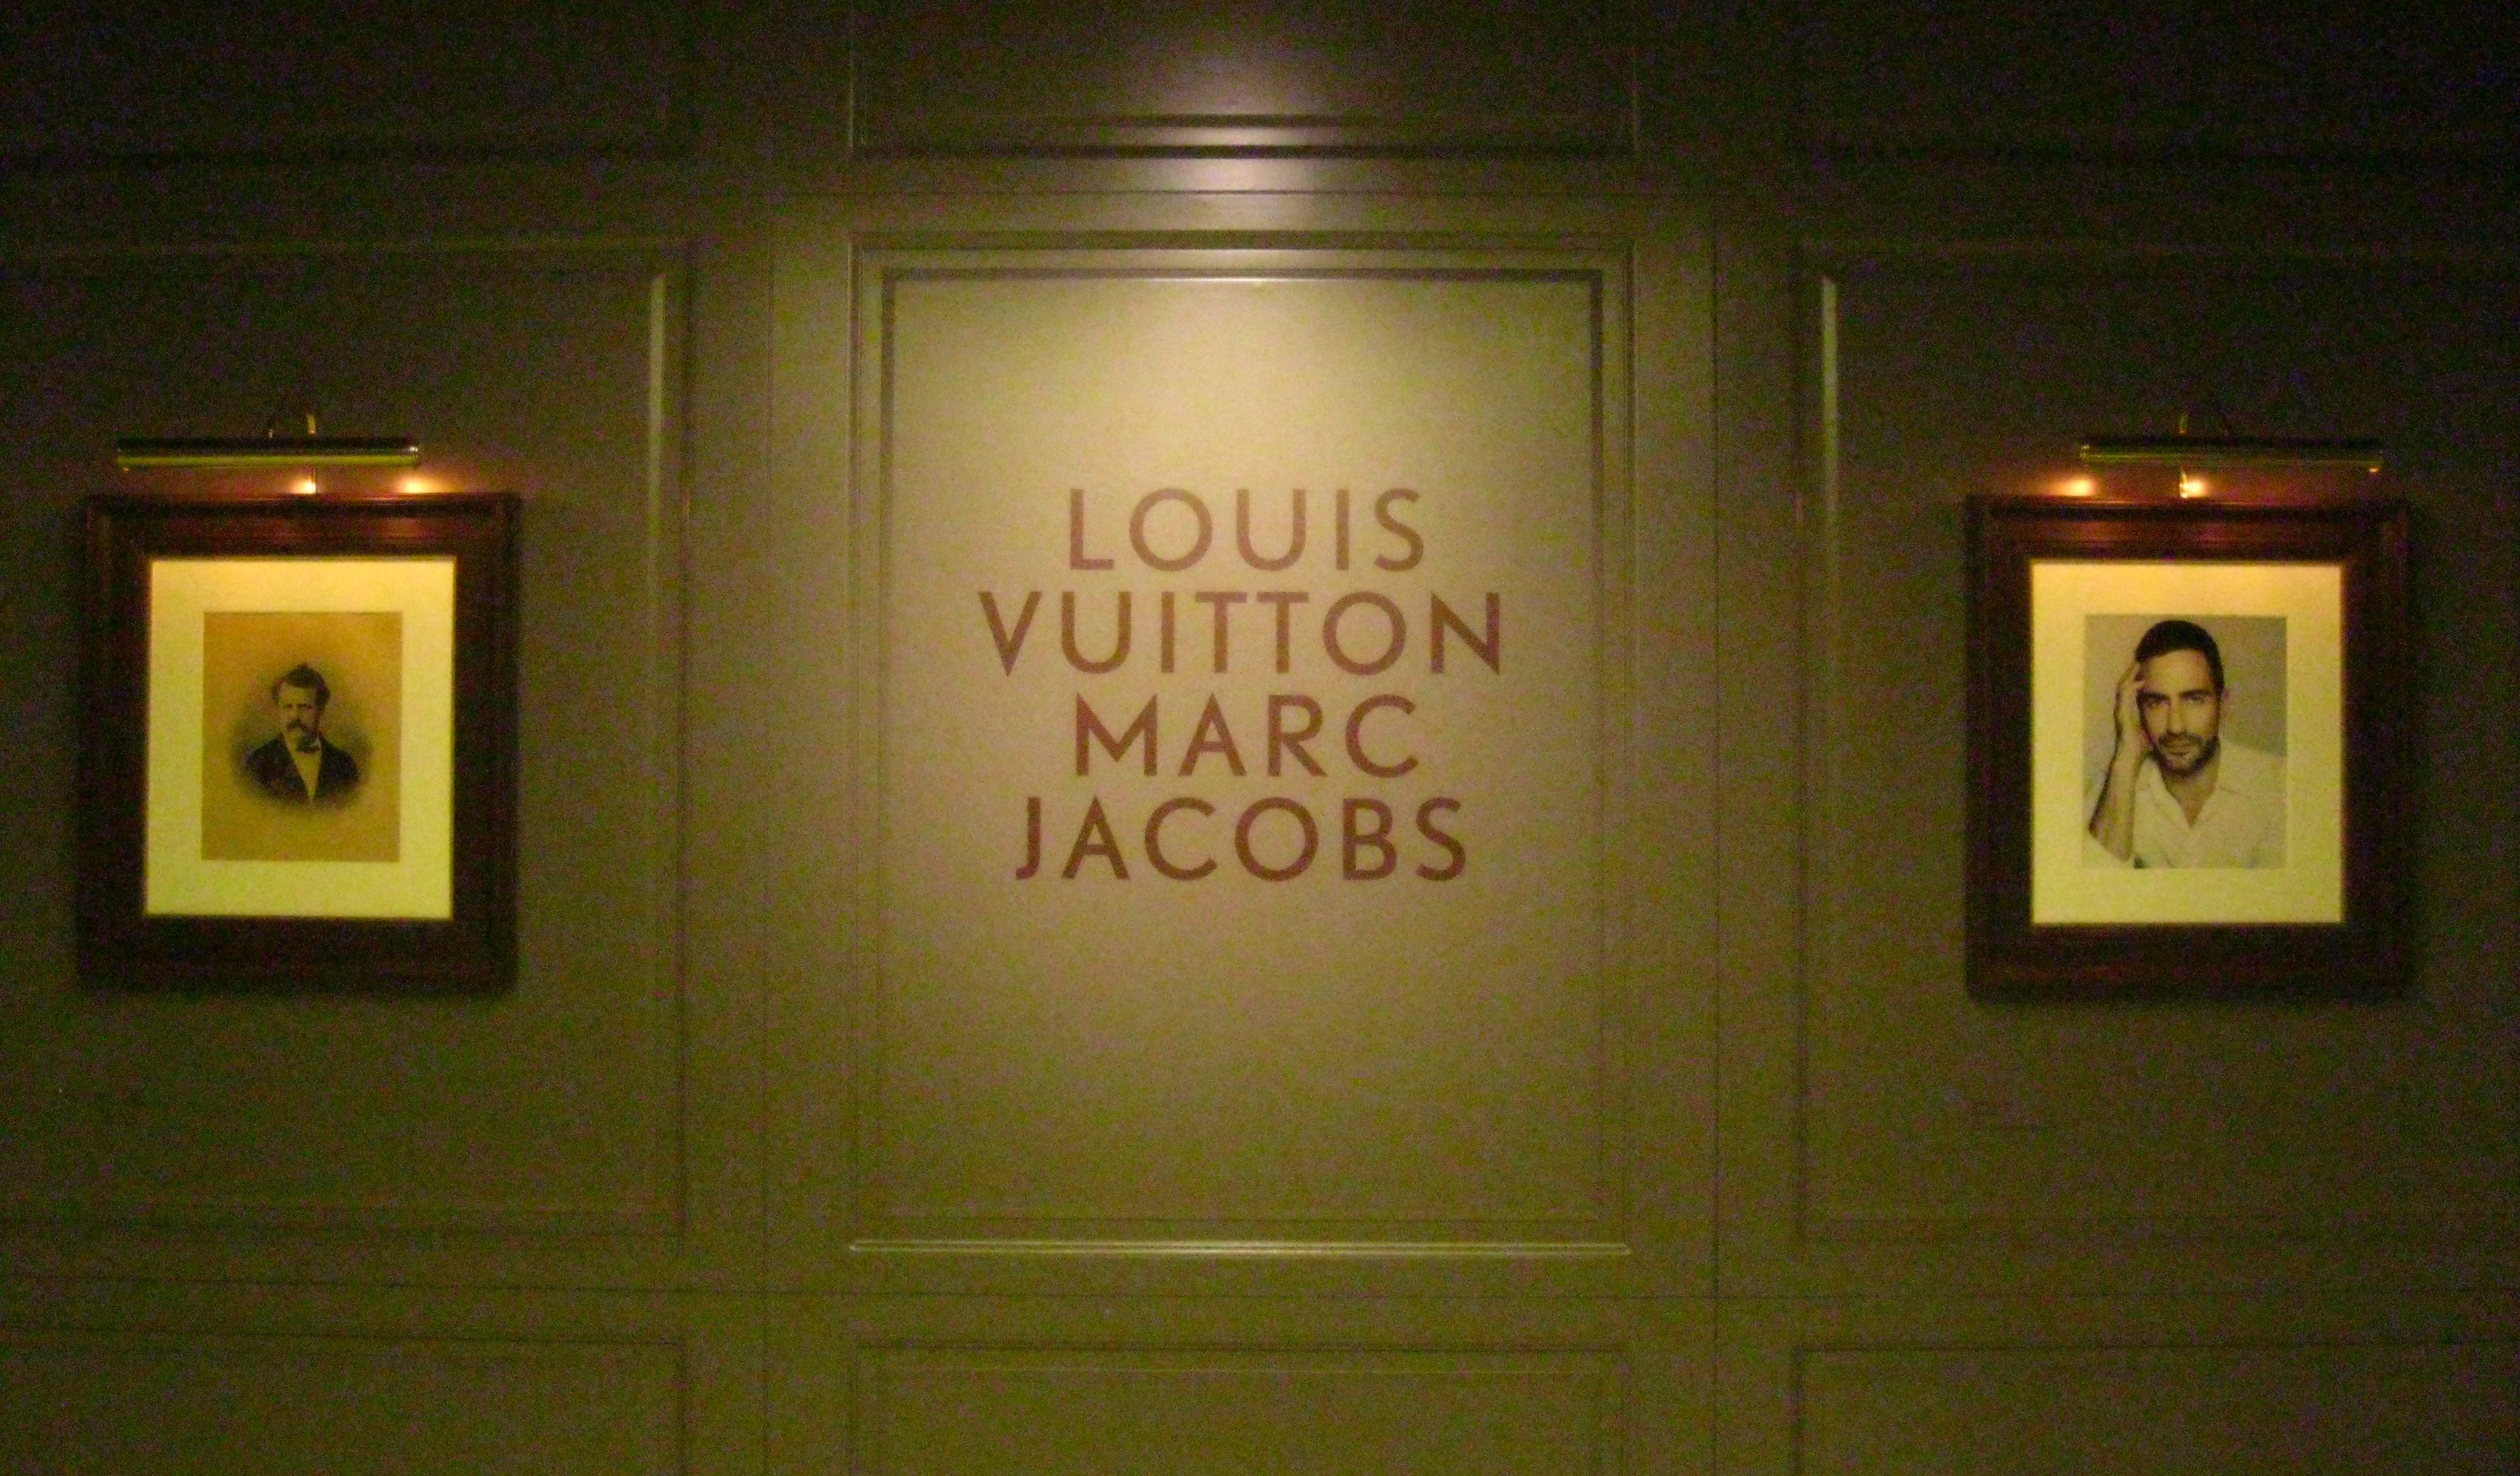 Louis Vuitton Marc Jacobs exhibition – Part 1 | Ritournelle